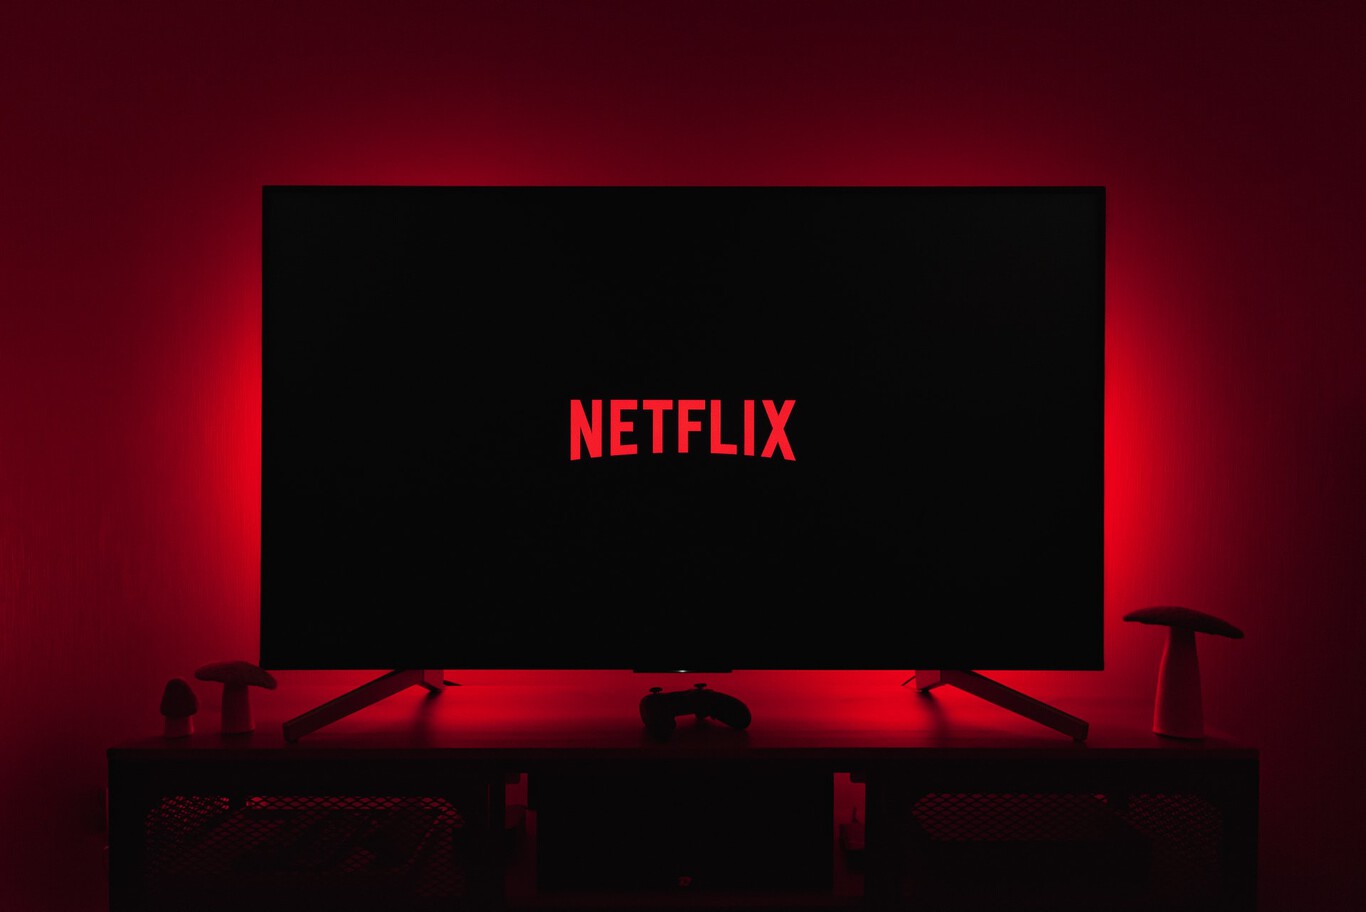 La empresa Netflix anunció que dispondrá de 2.500 millones de dólares durante los próximos cuatro años